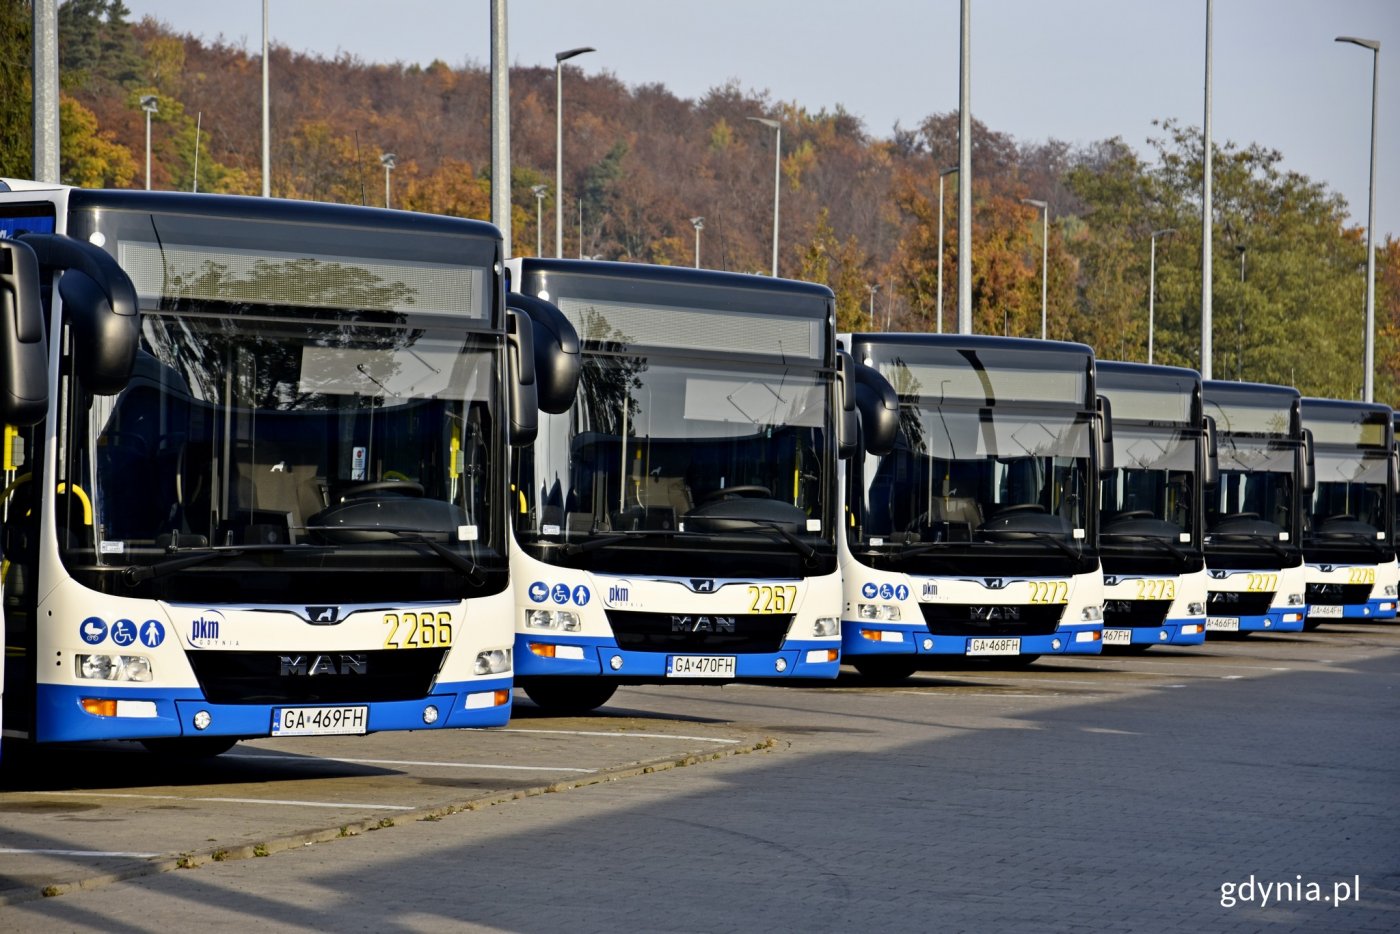 Wakacyjne autobusy i trolejbusy zaczną jeździć od 27 czerwca 2020 r.